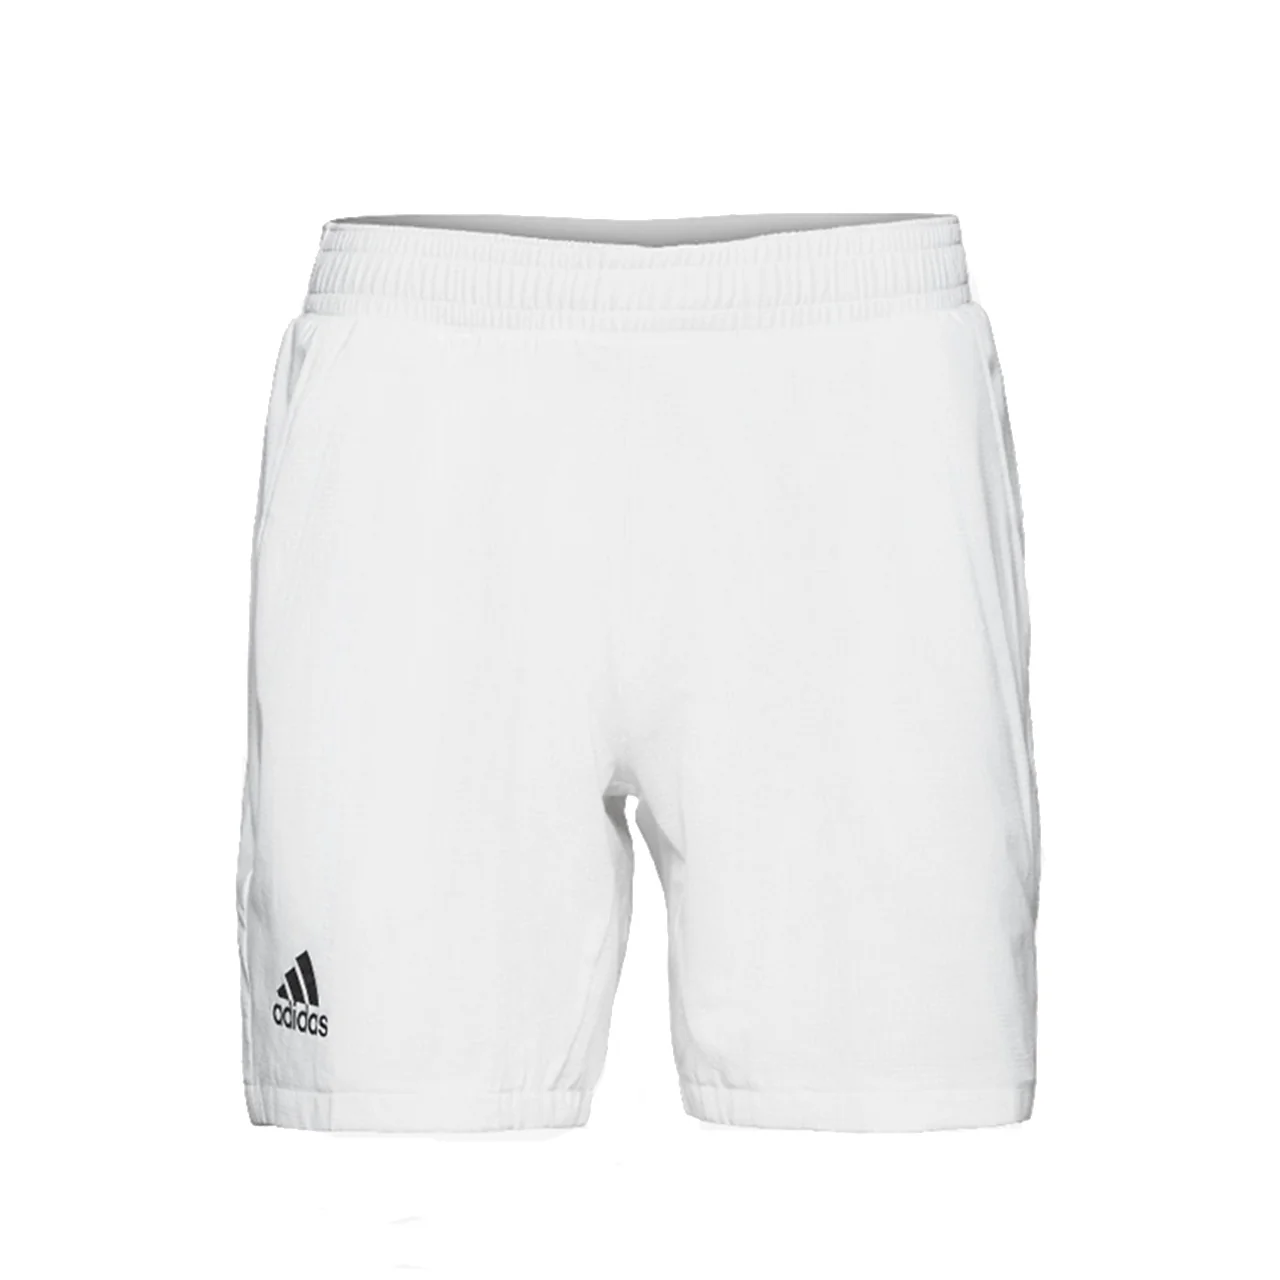 Adidas Ergo Tennis Shorts White Size XL